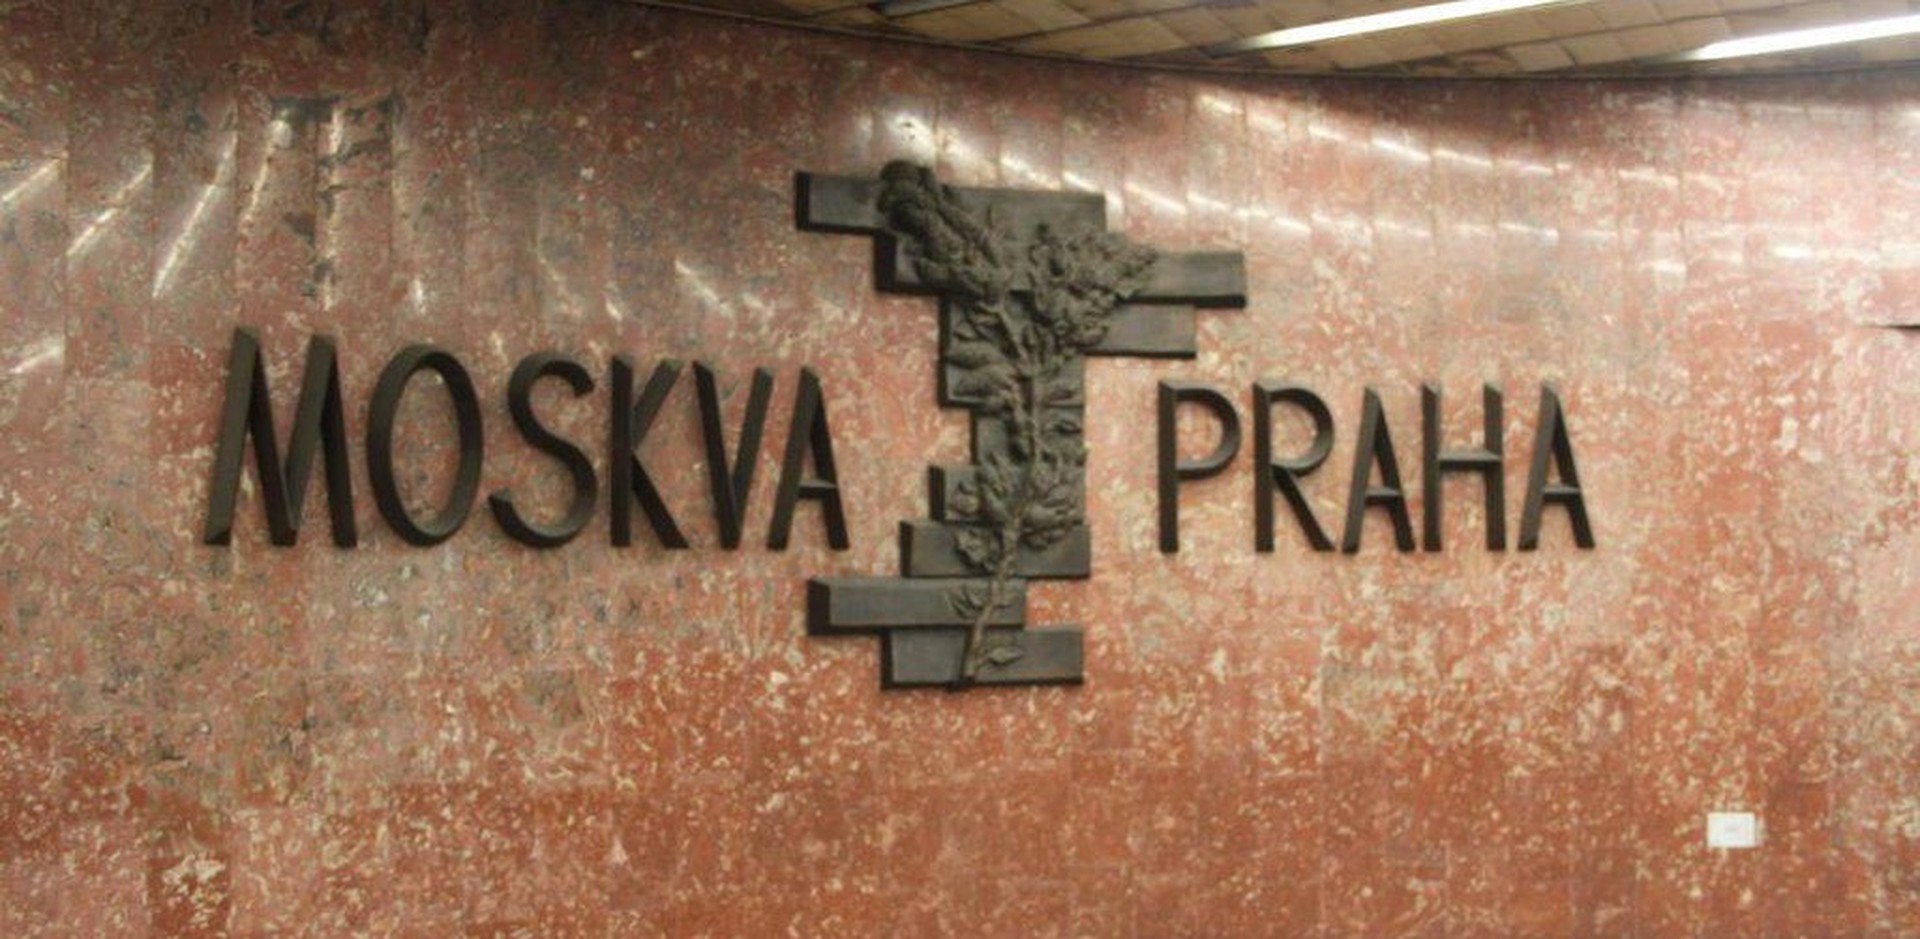 Украинская беженка возмутилась надписями на русском и символикой СССР в метро Праги